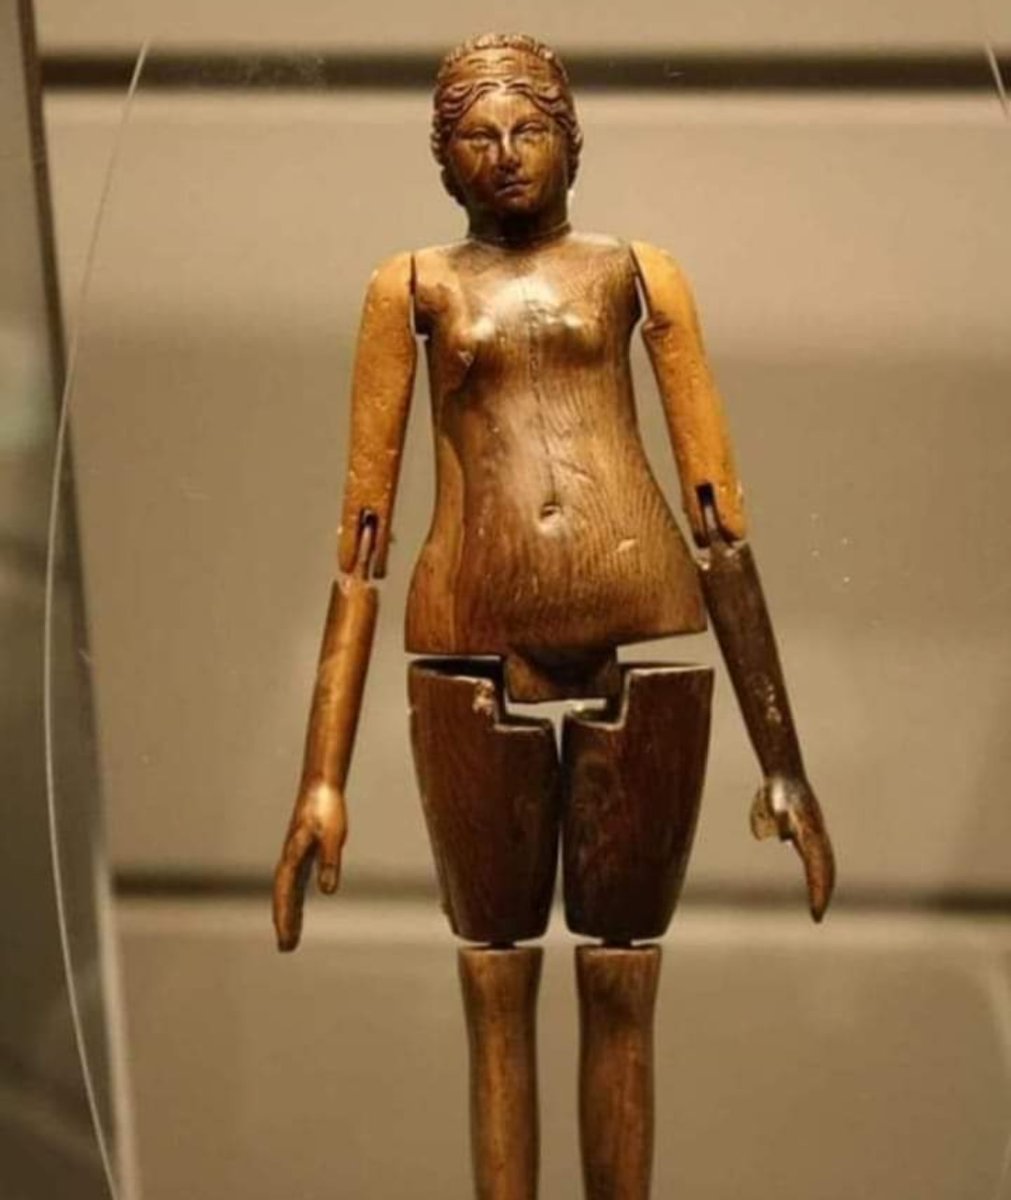 8 yaşında bir çocuğun mezarından çıkan koyu renkli fildişinden yapılmış oyuncak, oyuncak 1800 yaşında, Roma dönemi.